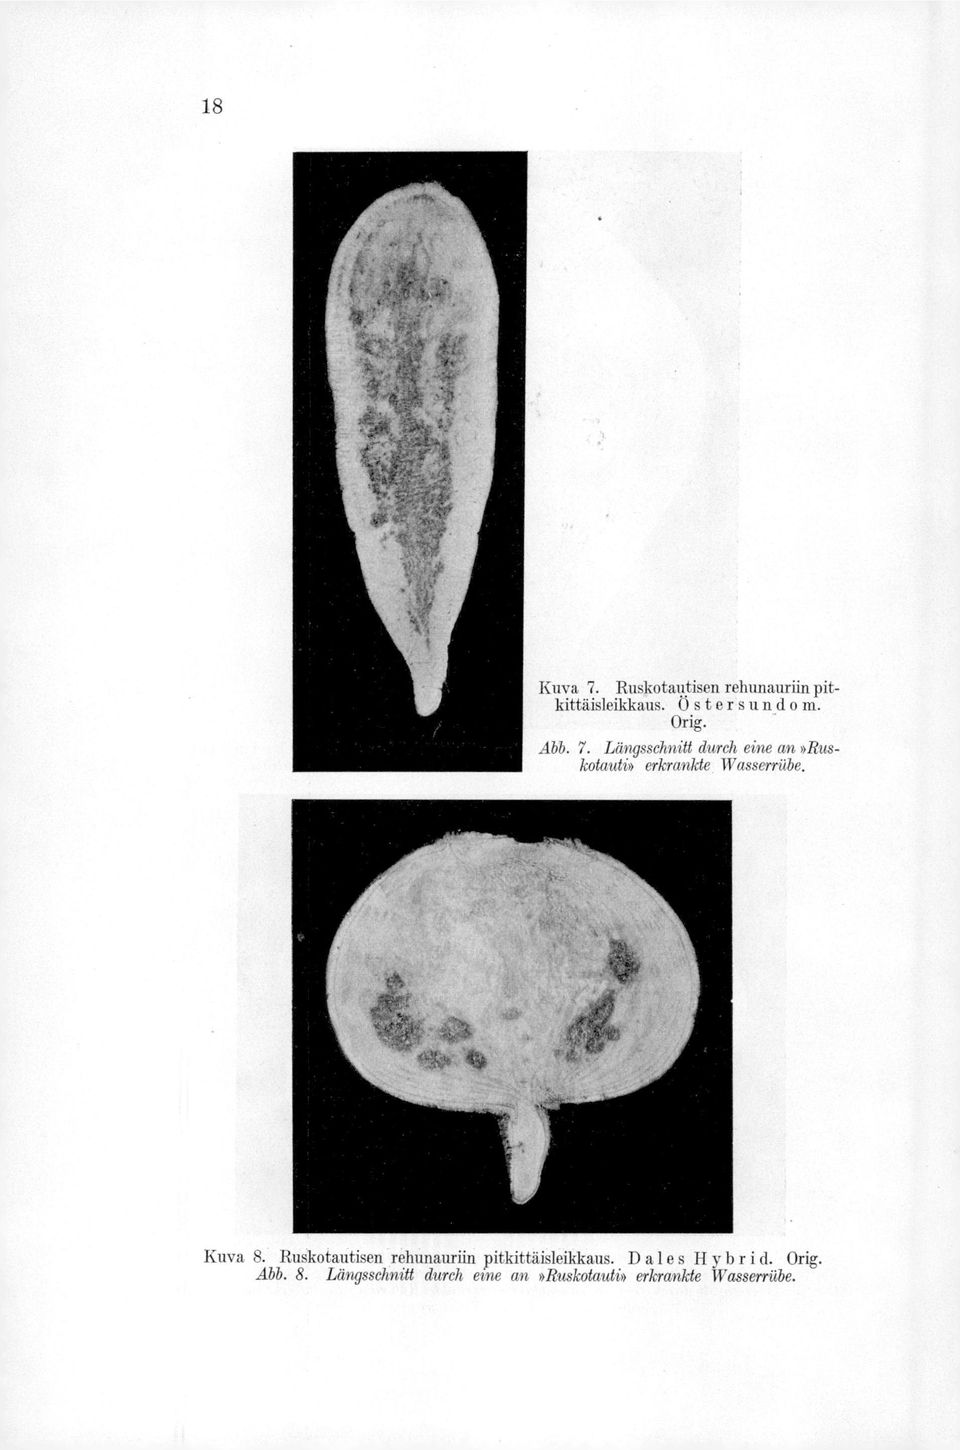 Kuva 8. Råkotautisen rehunauriin pitkittäisleikkaus. D ale s Hybr i d.